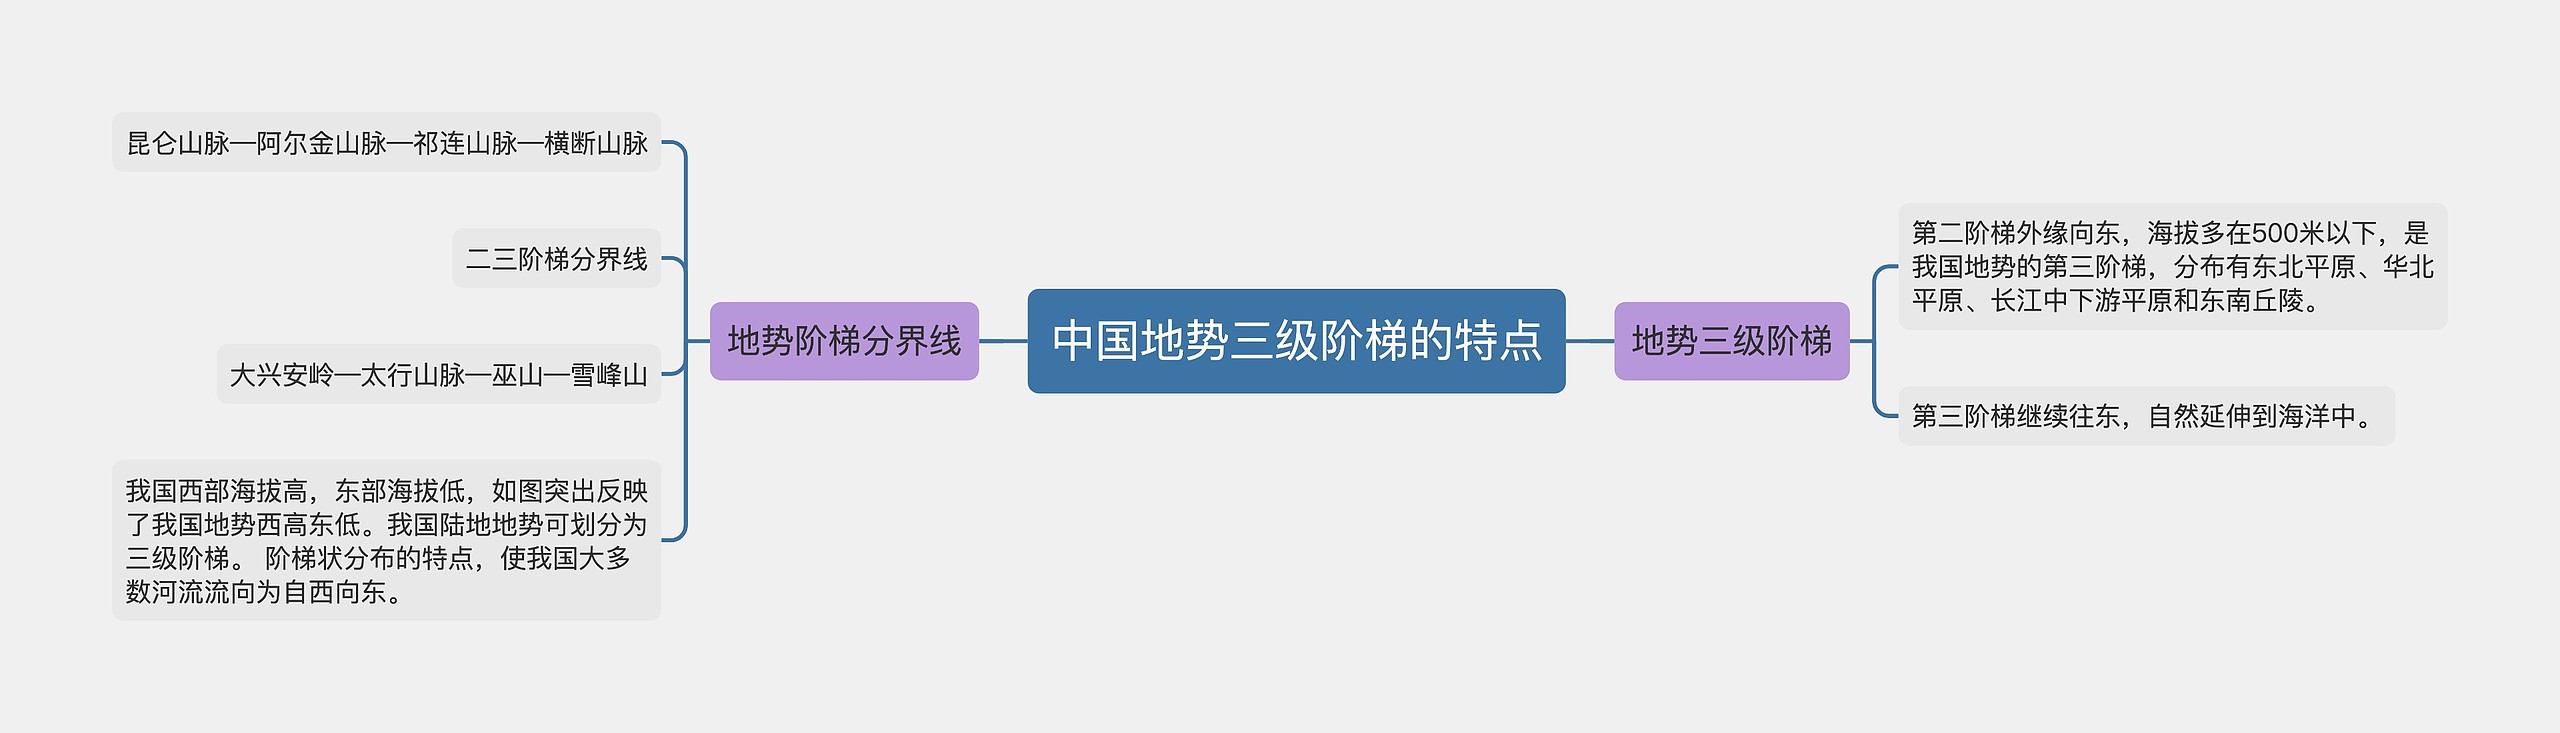 中国地势三级阶梯的特点思维导图